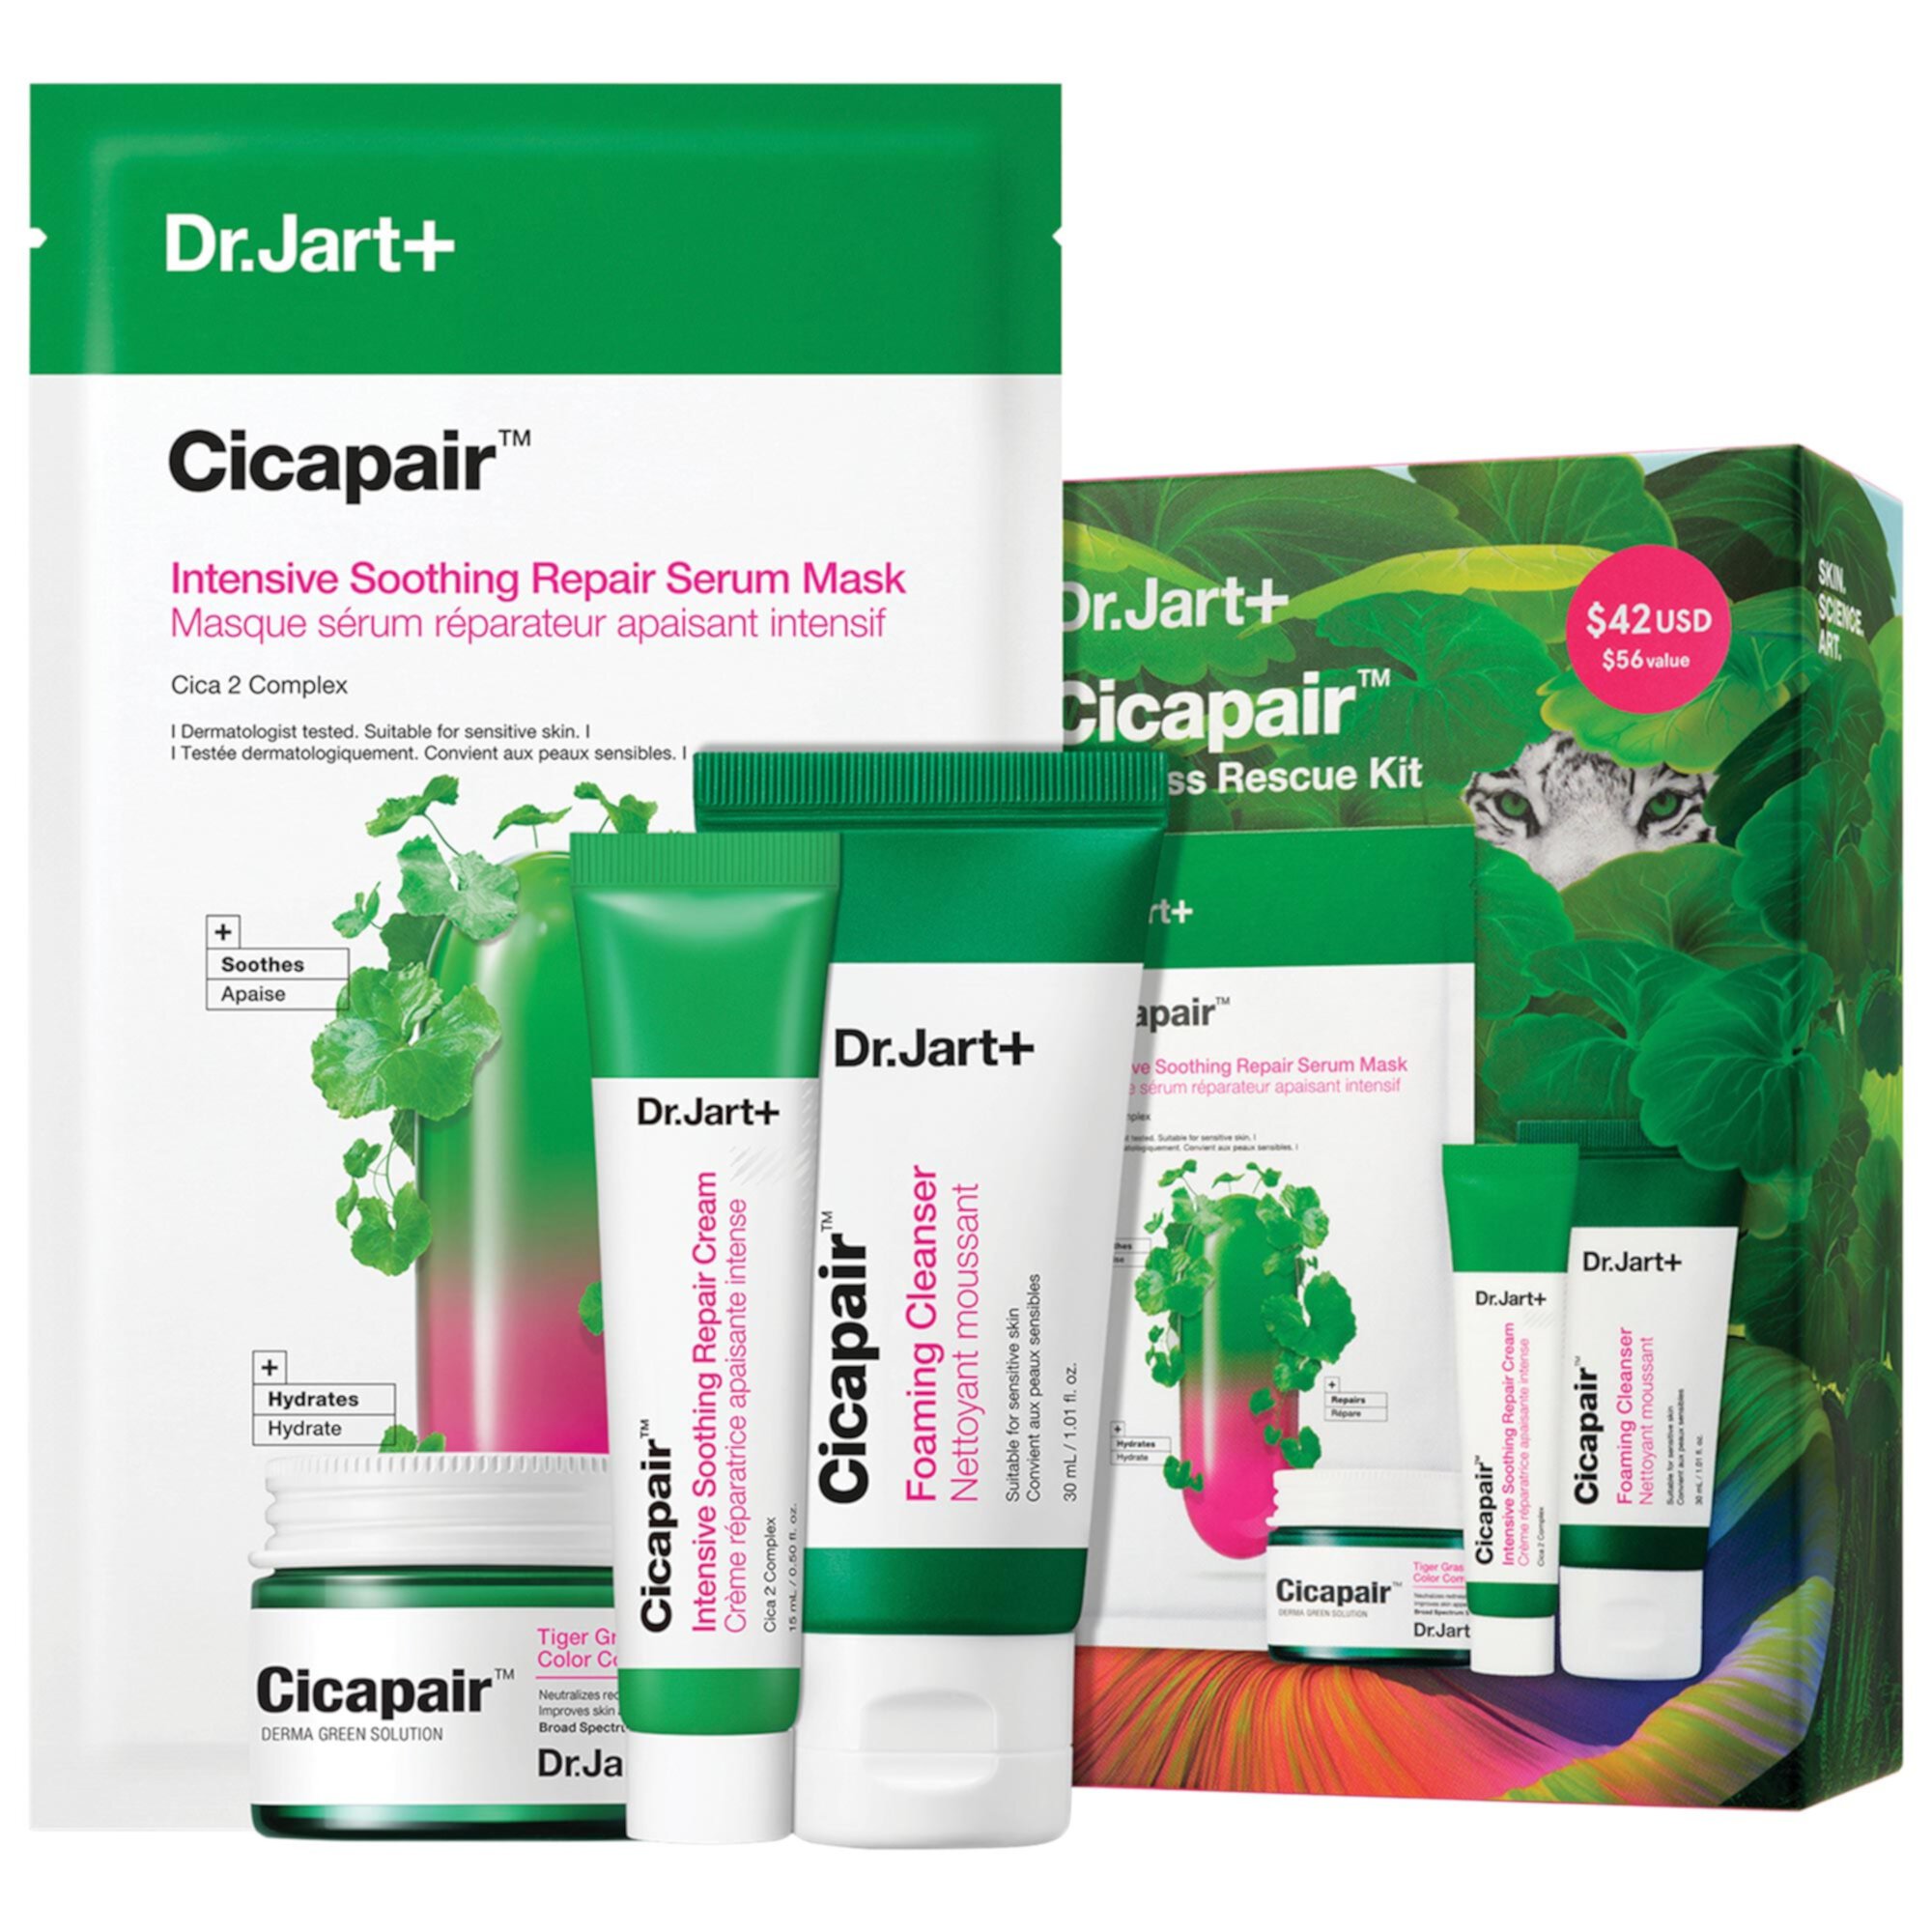 Cicapair™ Redness Rescue Kit for Sensitive Skin Dr. Jart+